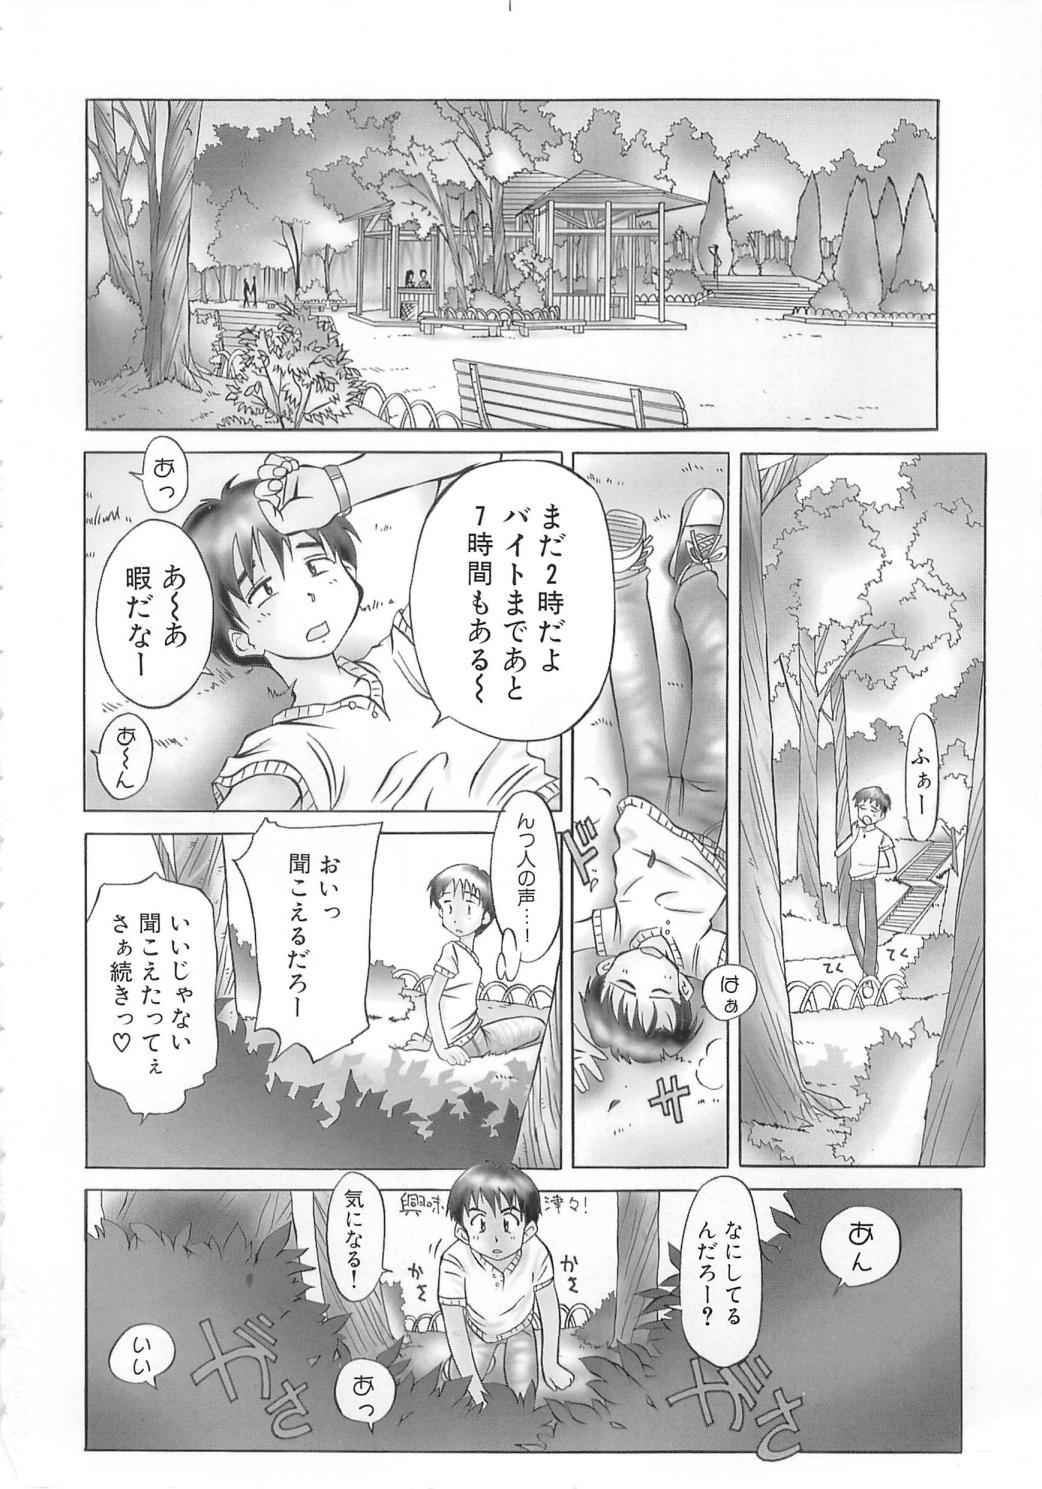 Japan Tonde Hazunde Boyoyoyoyon! Menage - Page 4